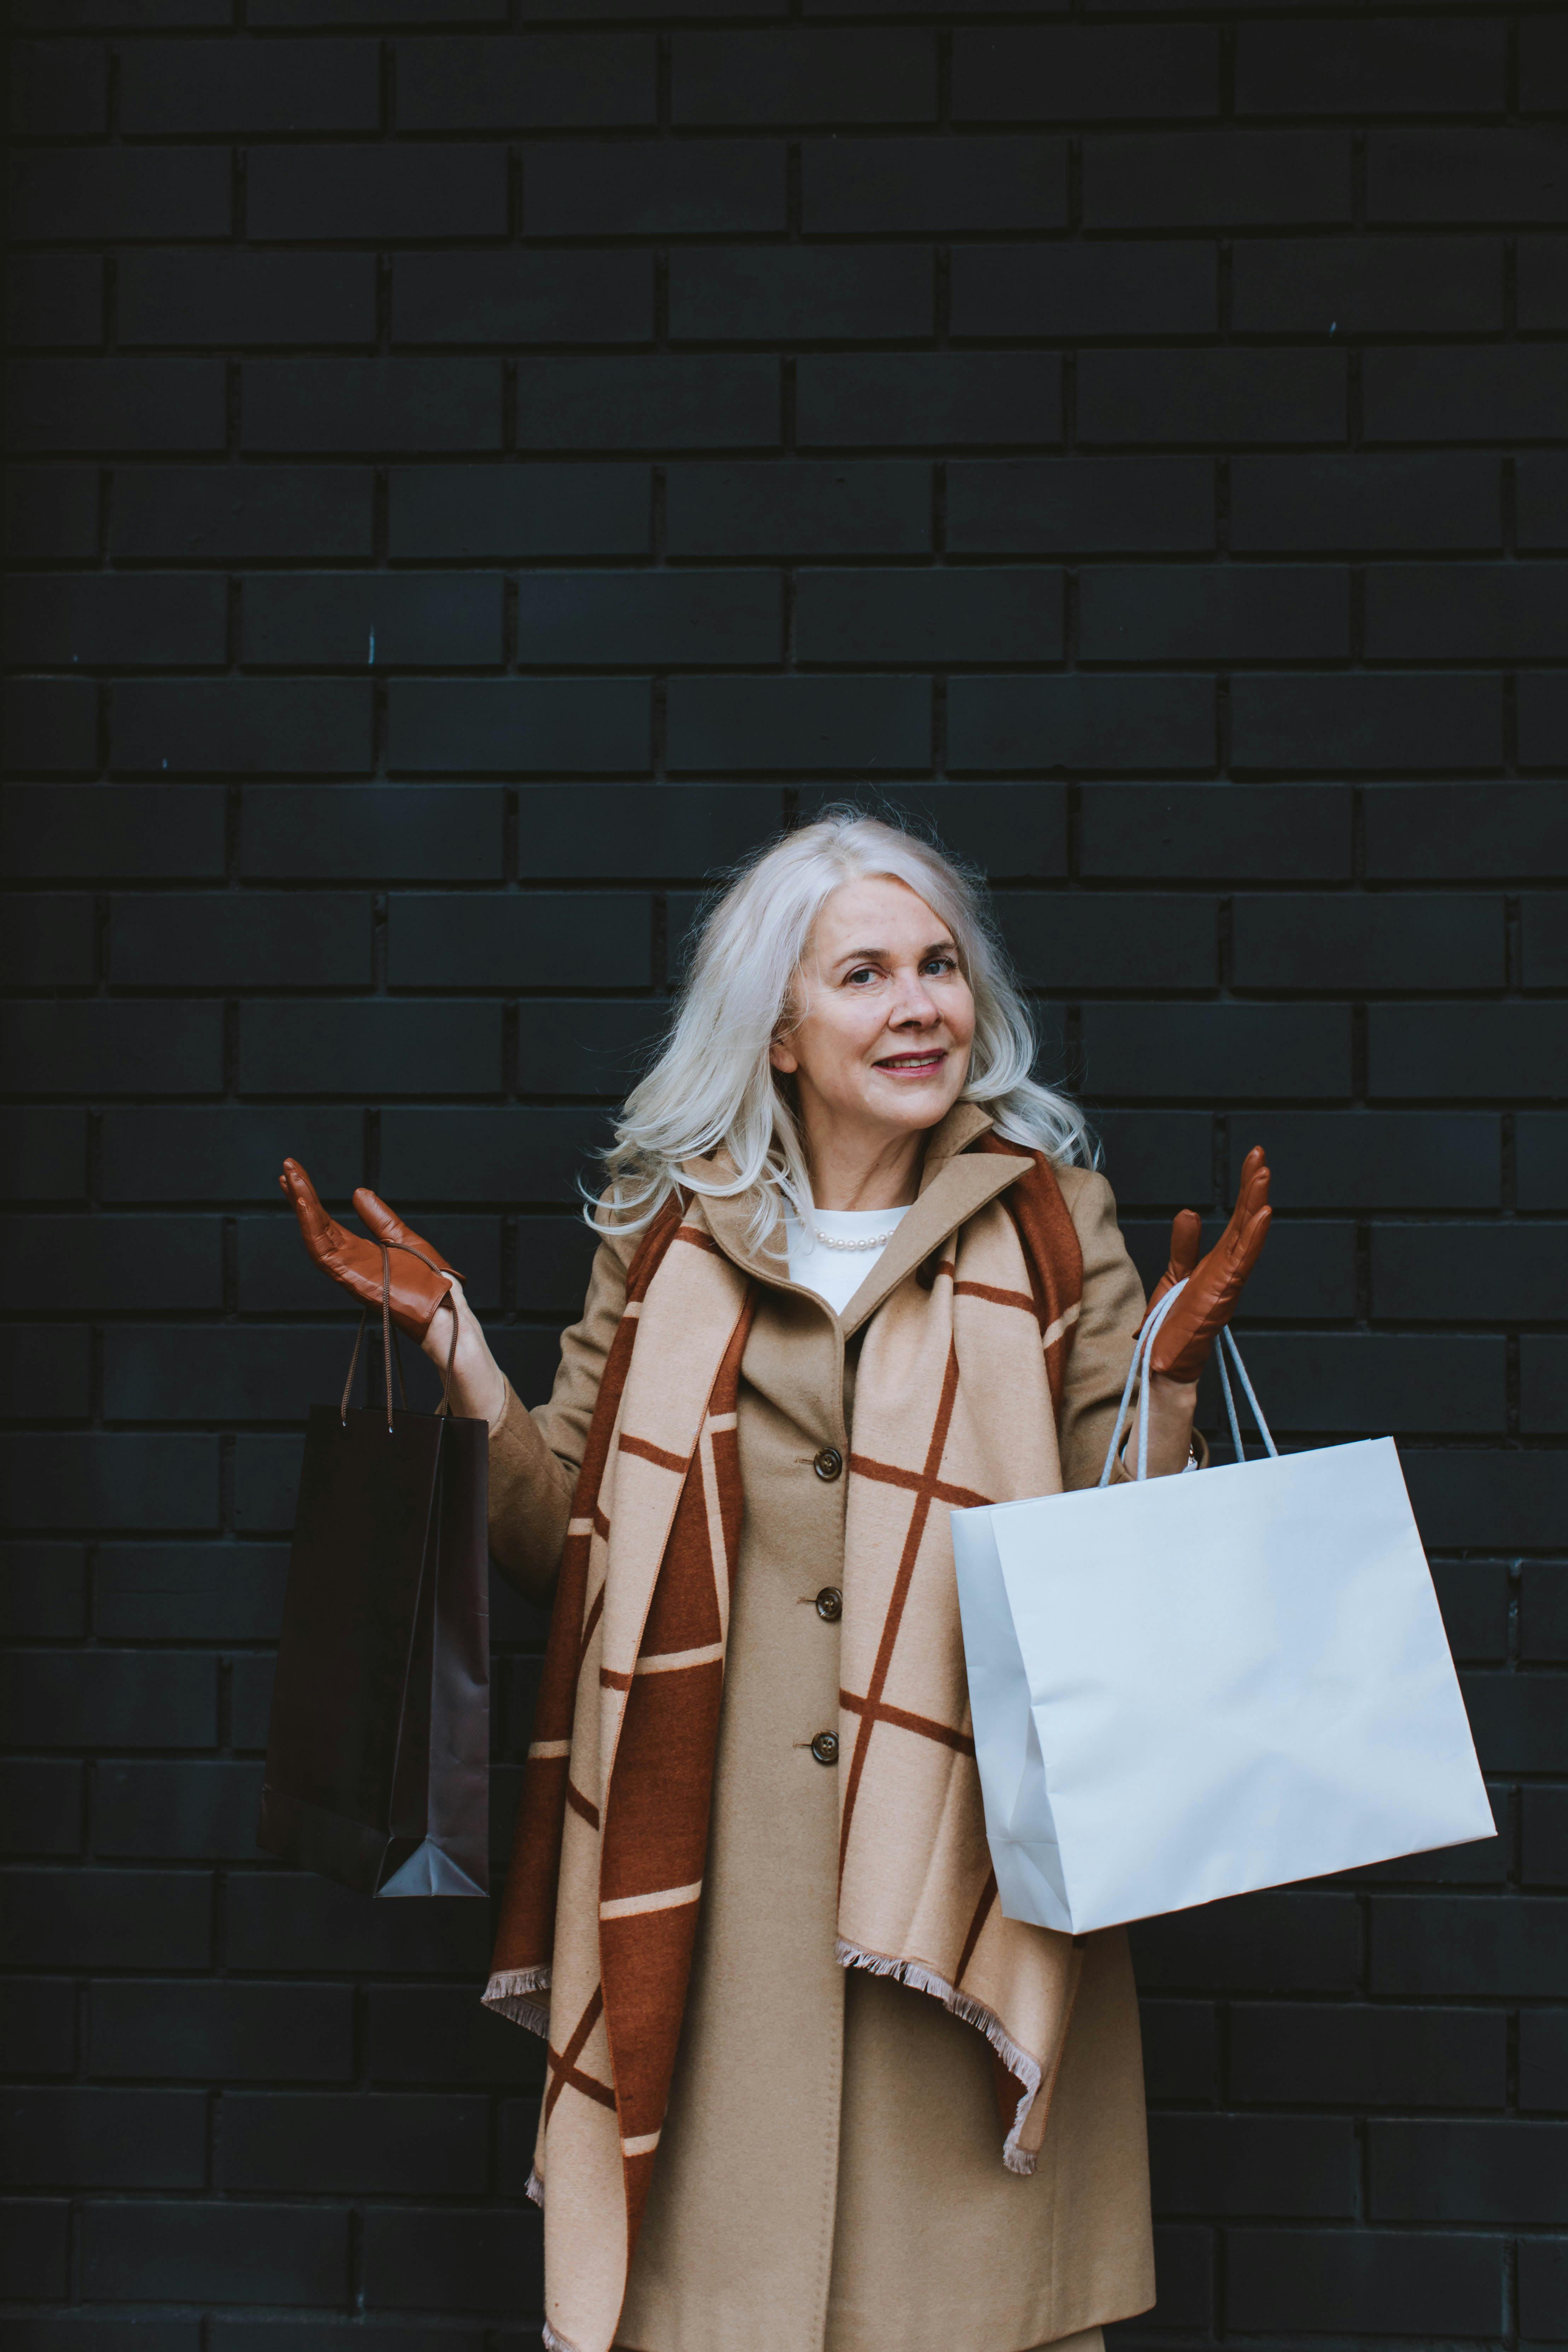 Une élégante femme âgée tenant des sacs de courses | Source : Pexels